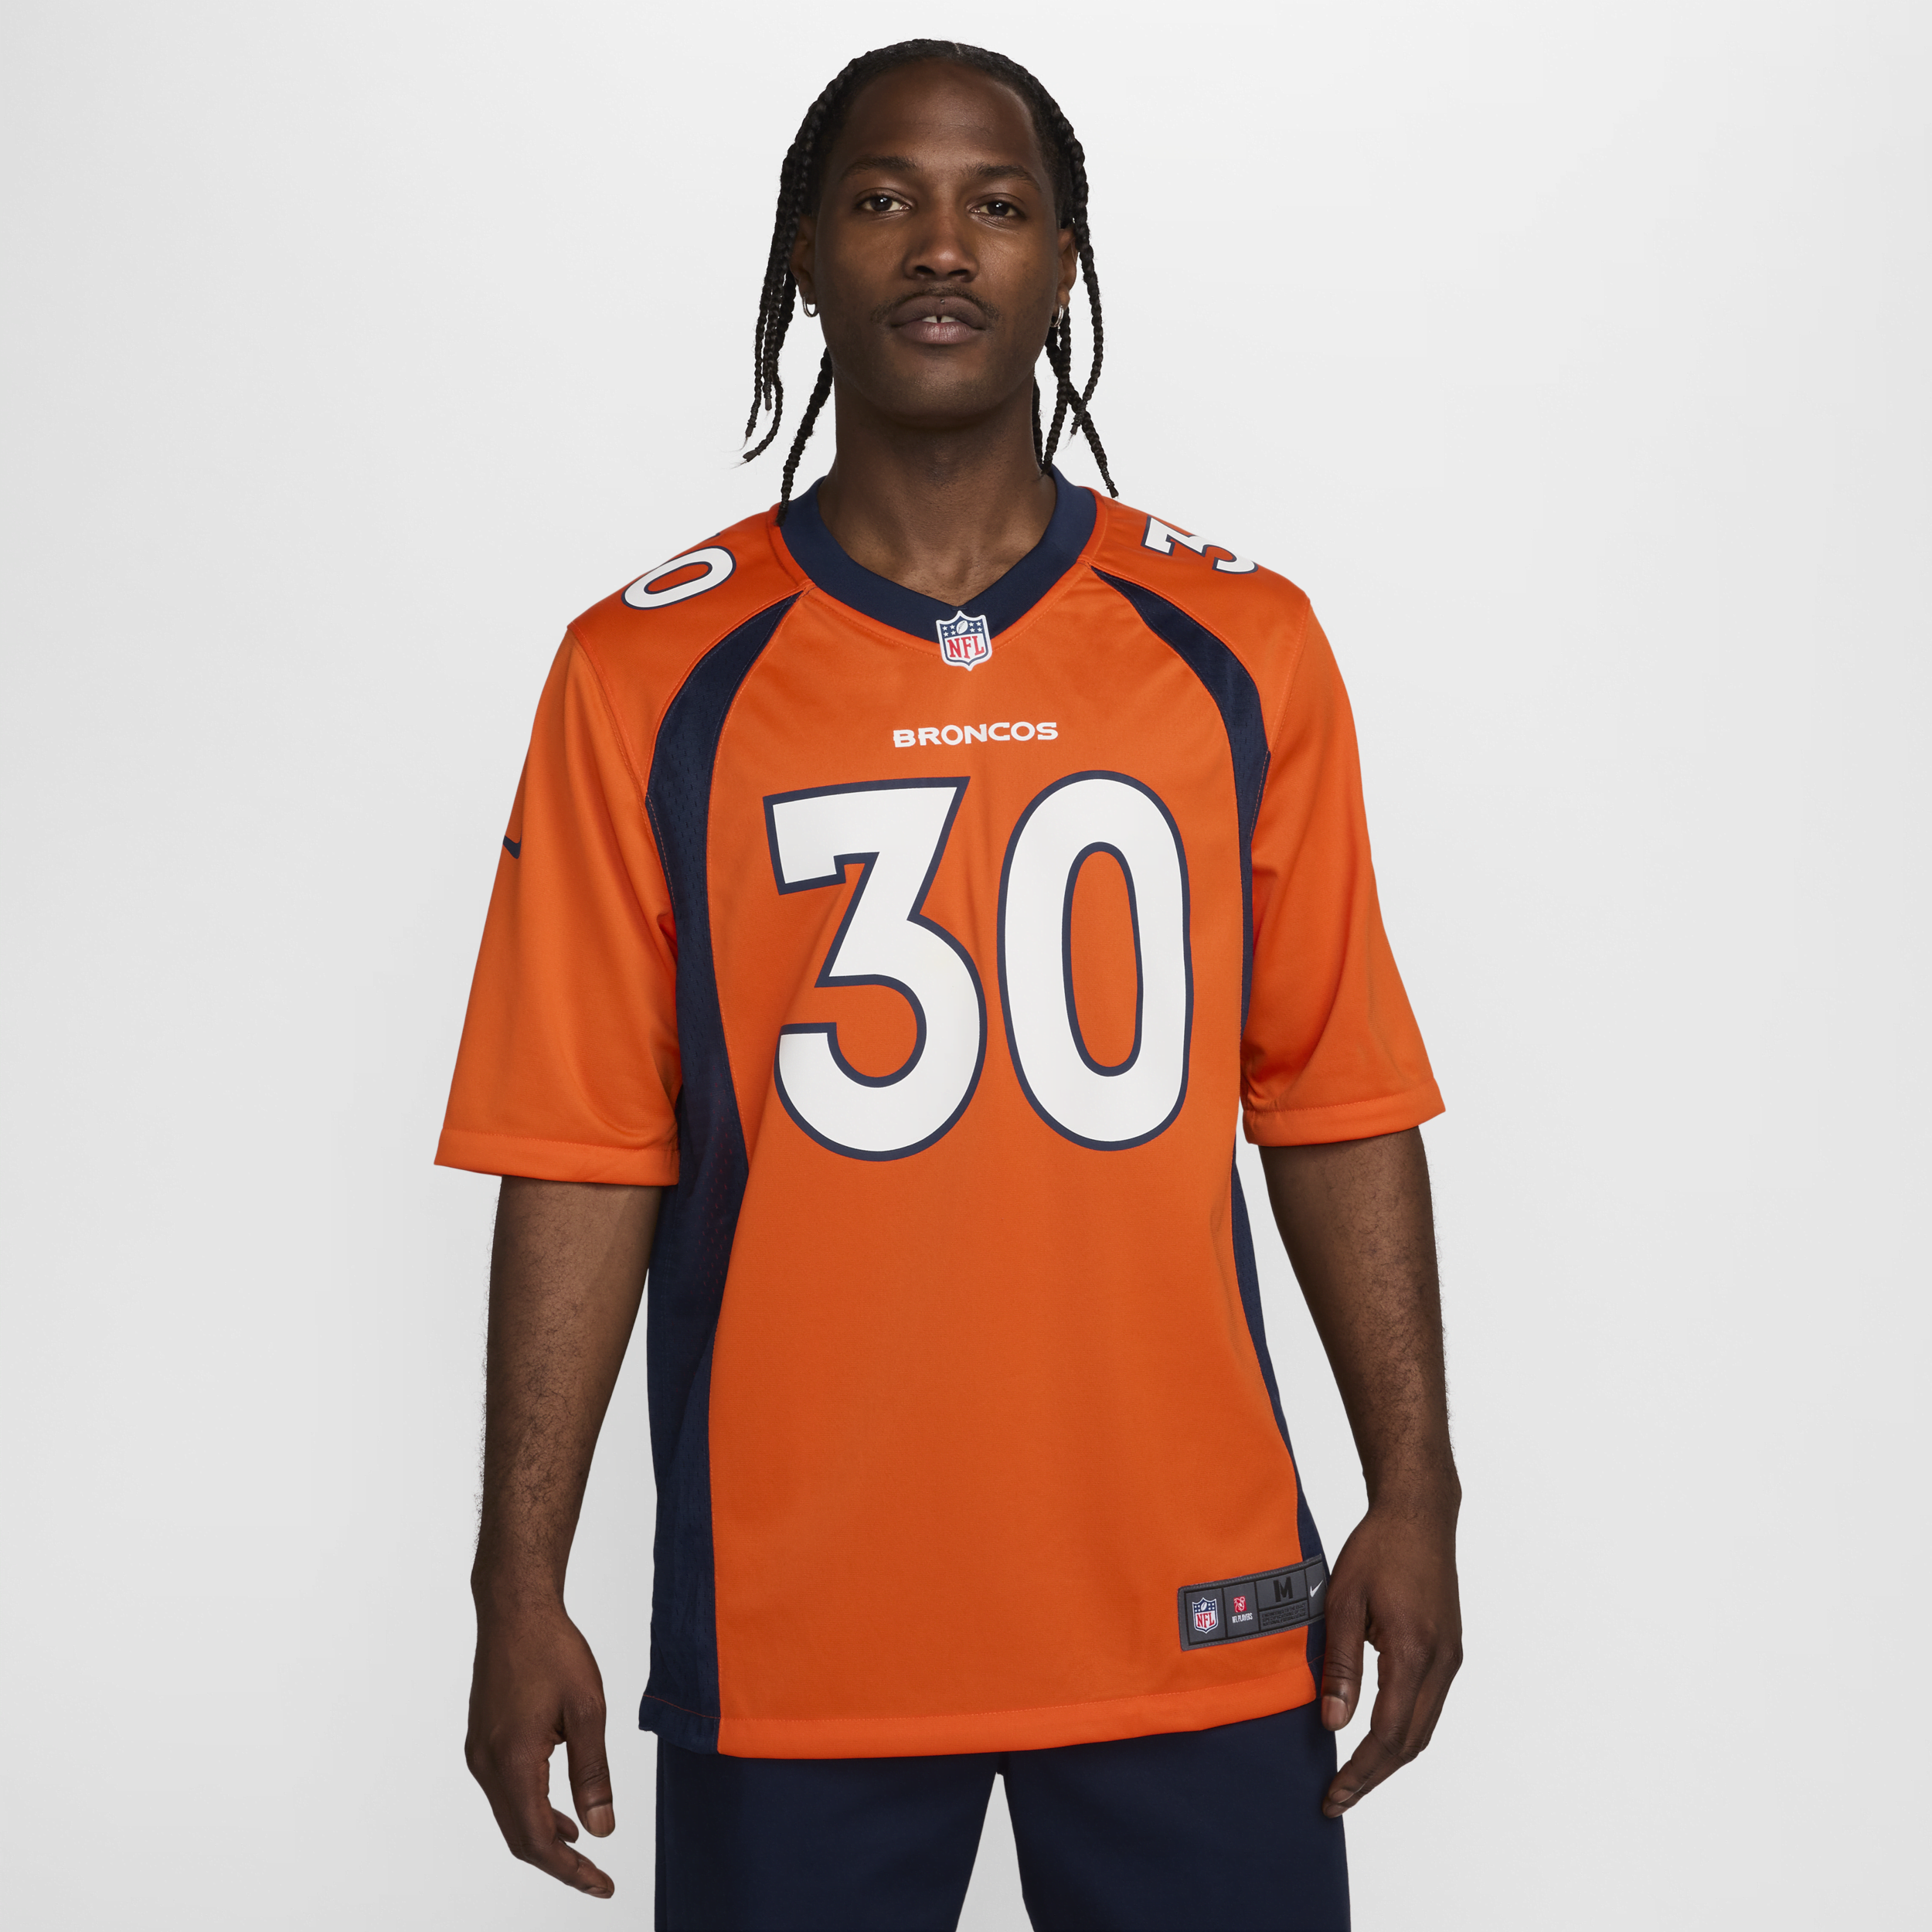 Ανδρική φανέλα αμερικανικού ποδοσφαίρου NFL Denver Broncos (Phillip Lindsay) - Πορτοκαλί